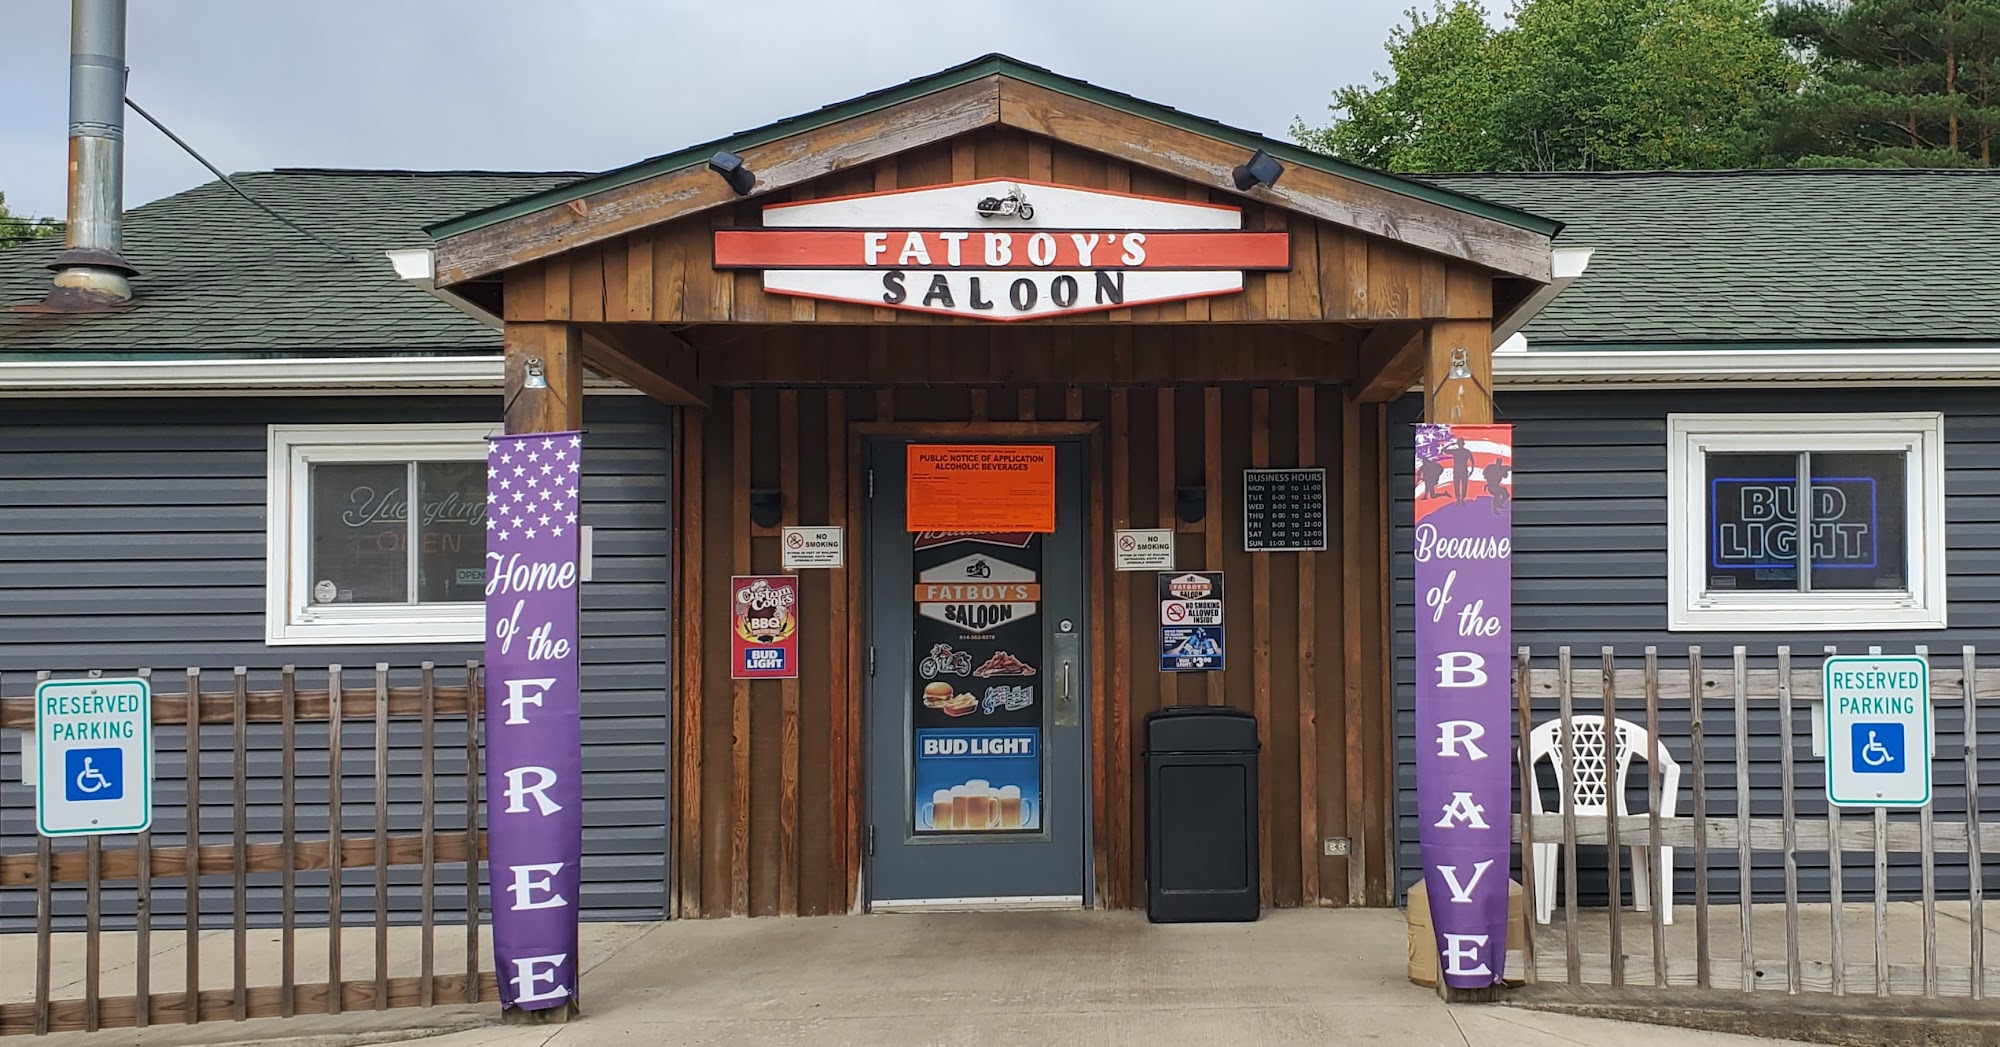 Fatboy's Saloon